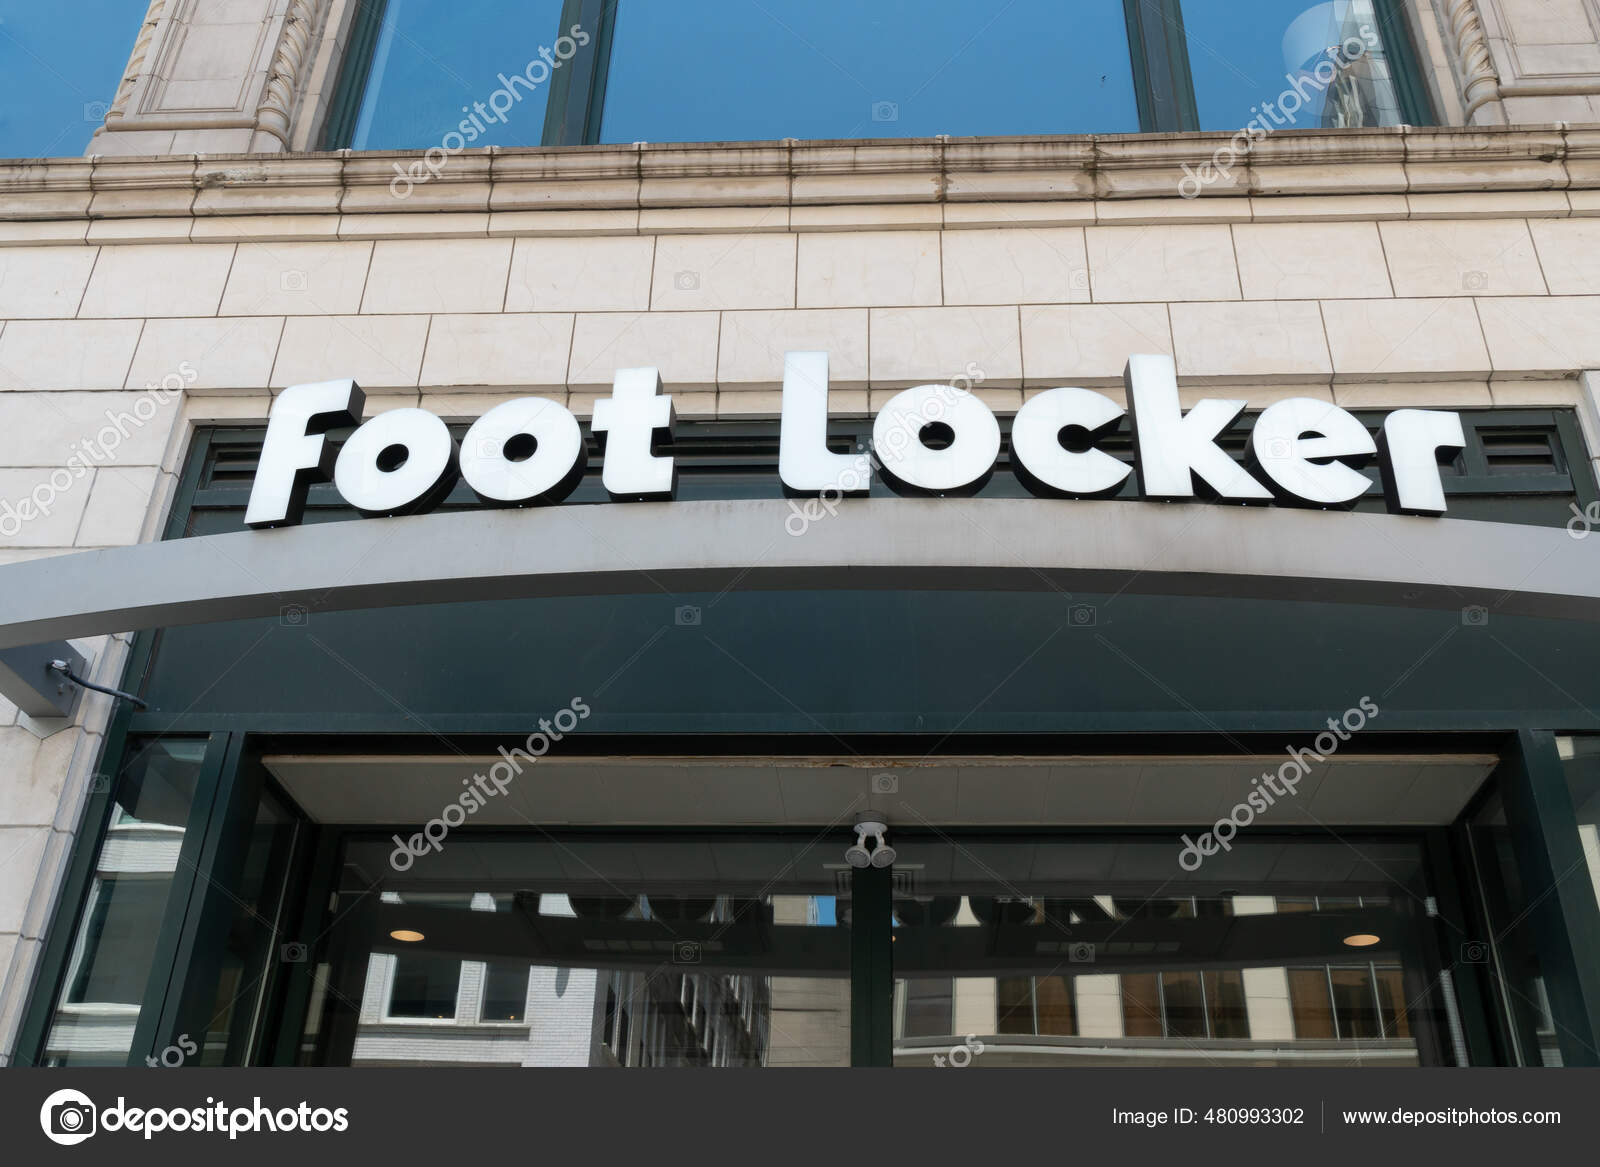 Footwear Milwaukee